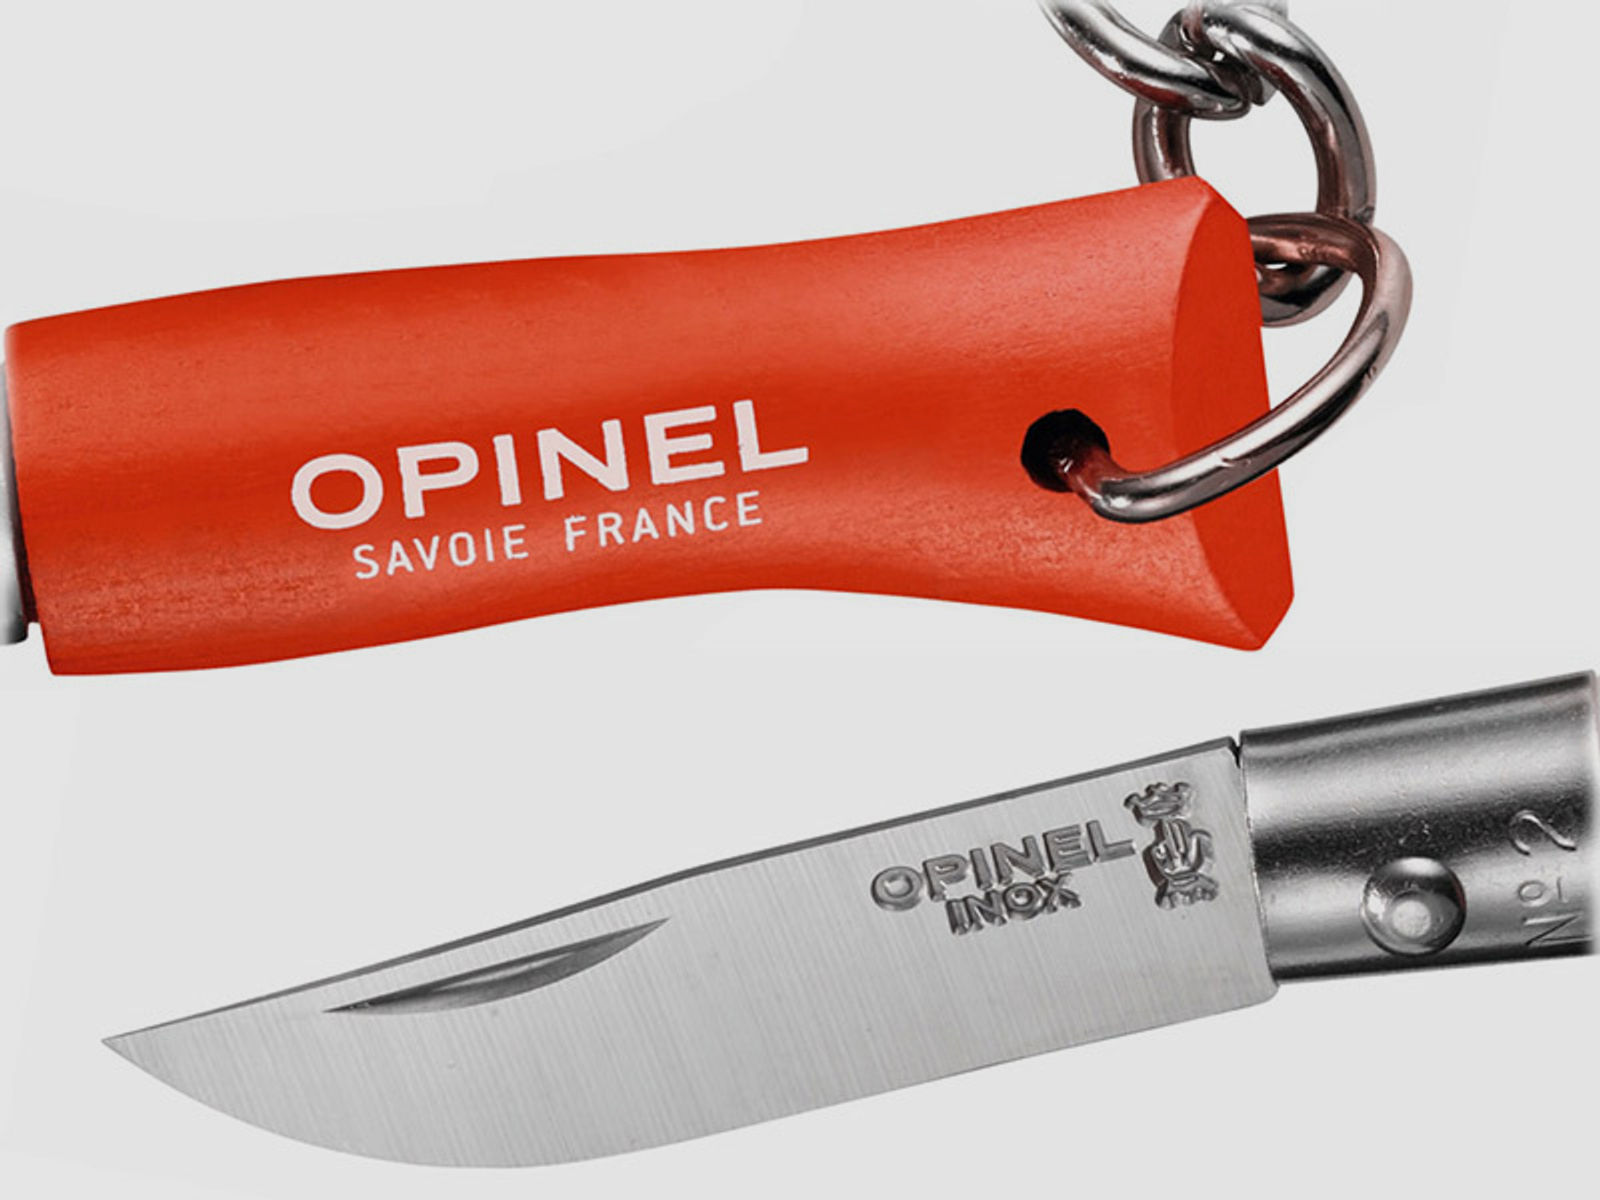 SchlĂĽsselanhĂ¤nger Mini Taschenmesser Opinel Colorama No2 Stahl 12C27 KlingenlĂ¤nge 3,5 cm orange